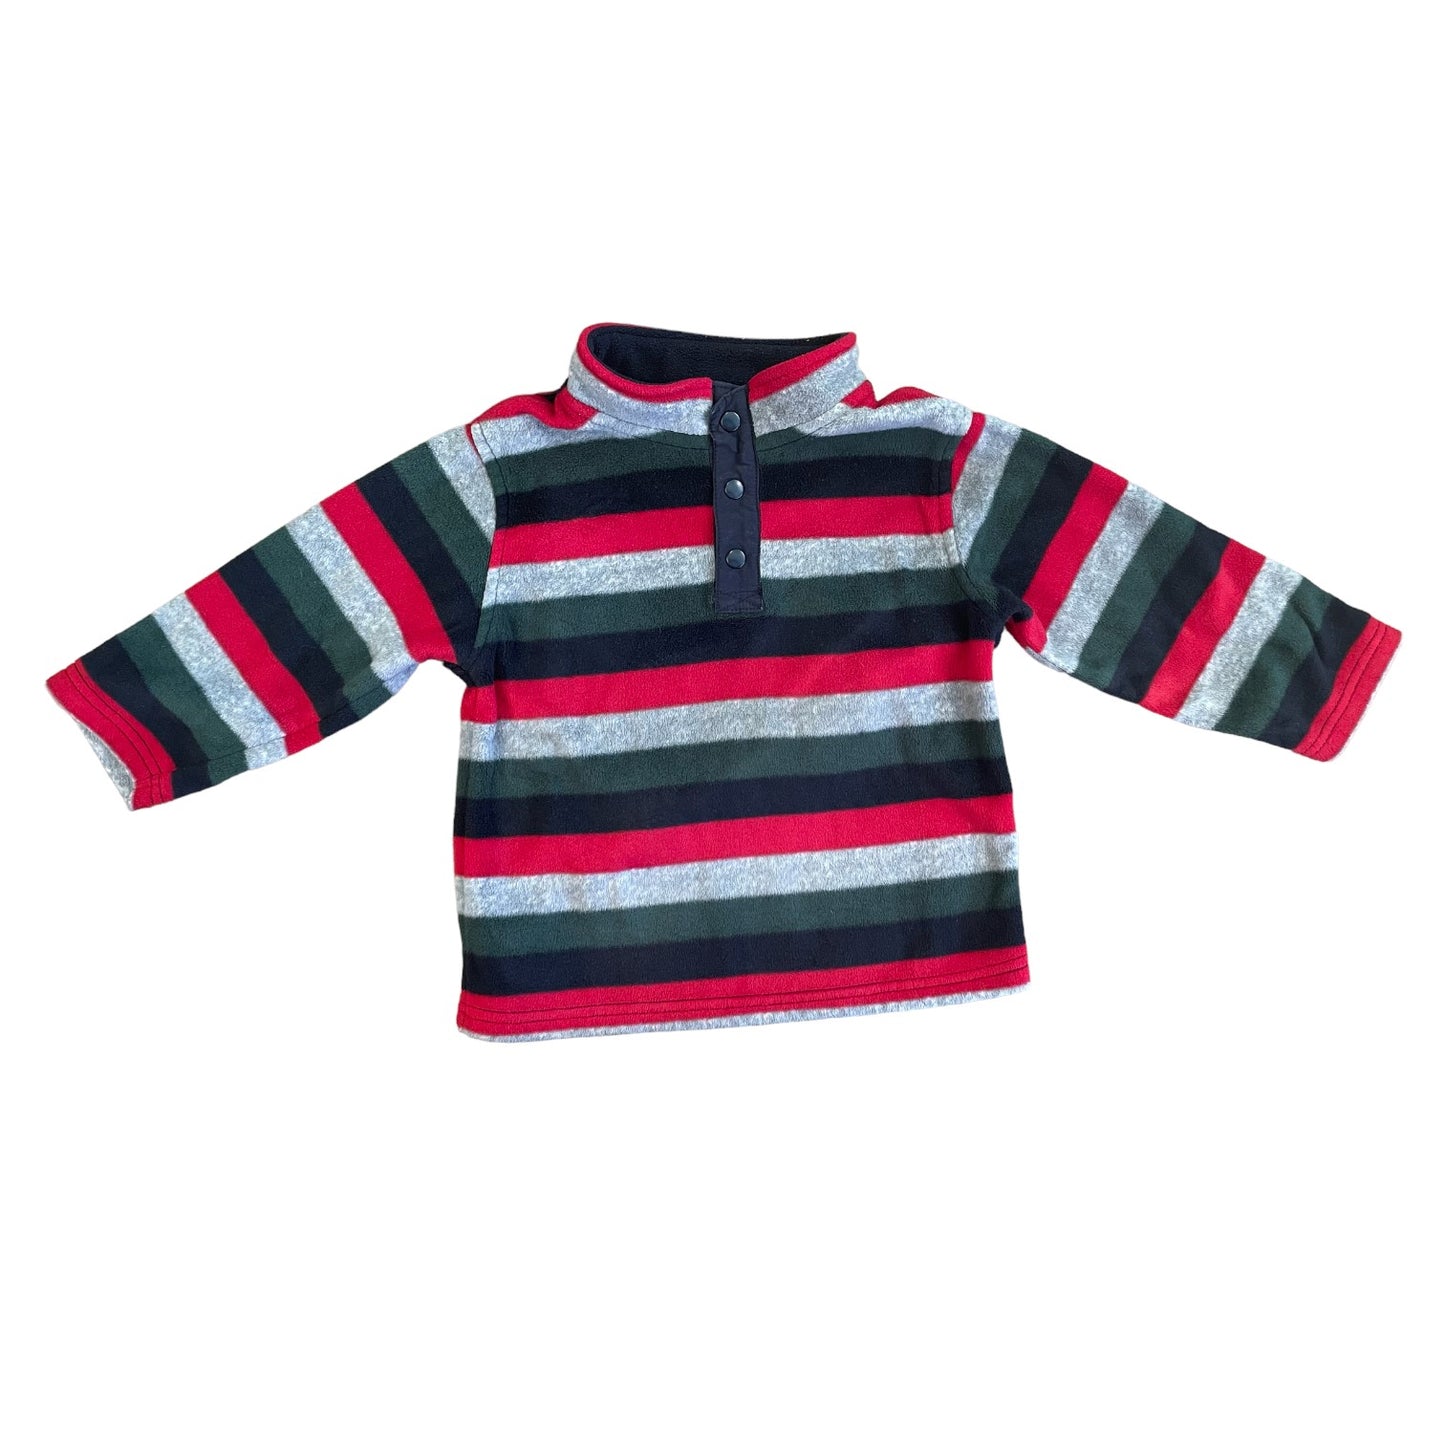 Gymboree Boys Fleece Sweater Size 2T-3T